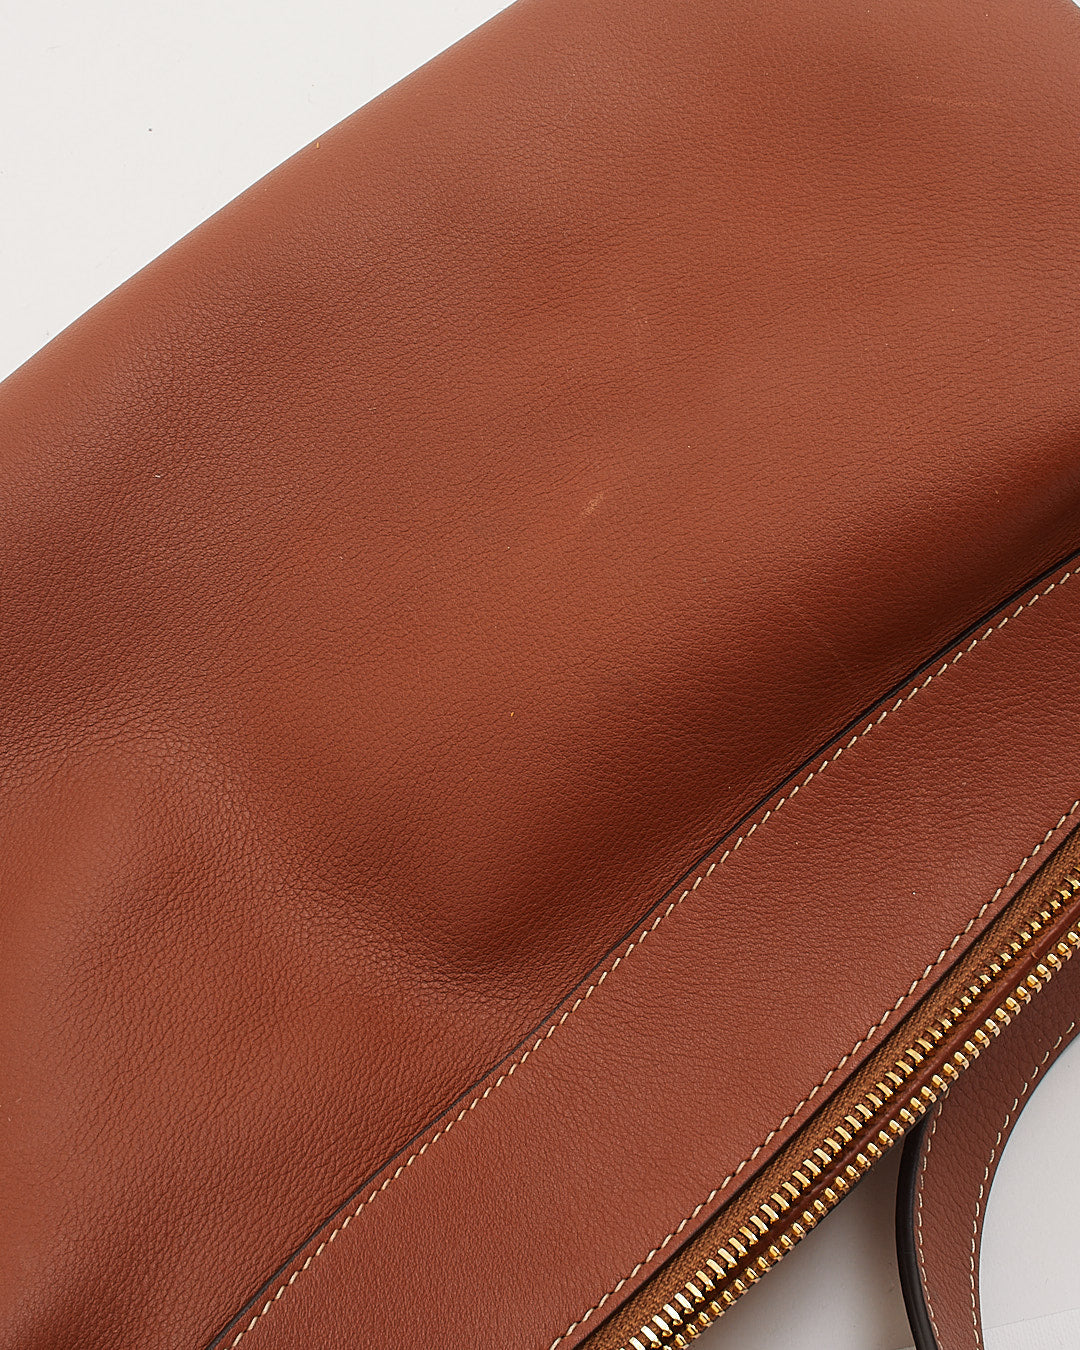 Celine Tan Leather Medium Romy Shoulder Bag